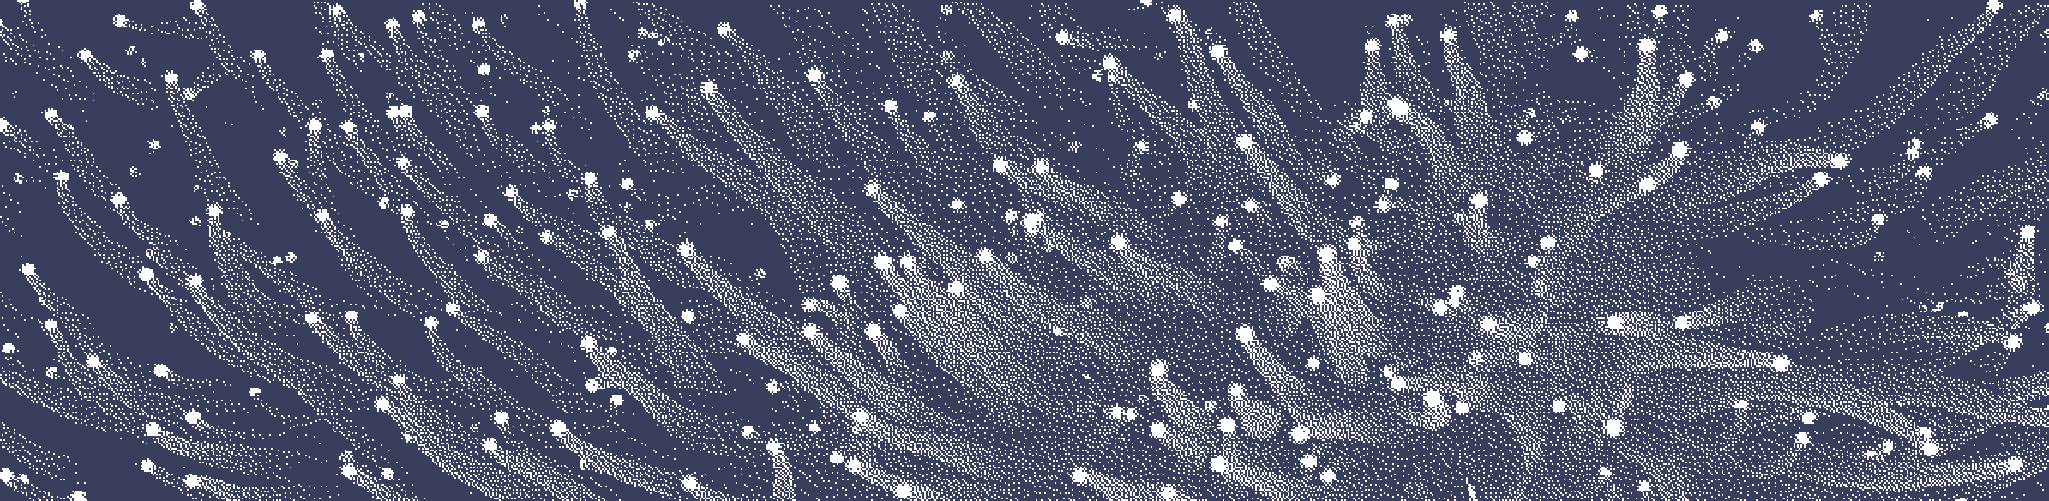 image d'entête : motif de corail pixelisé